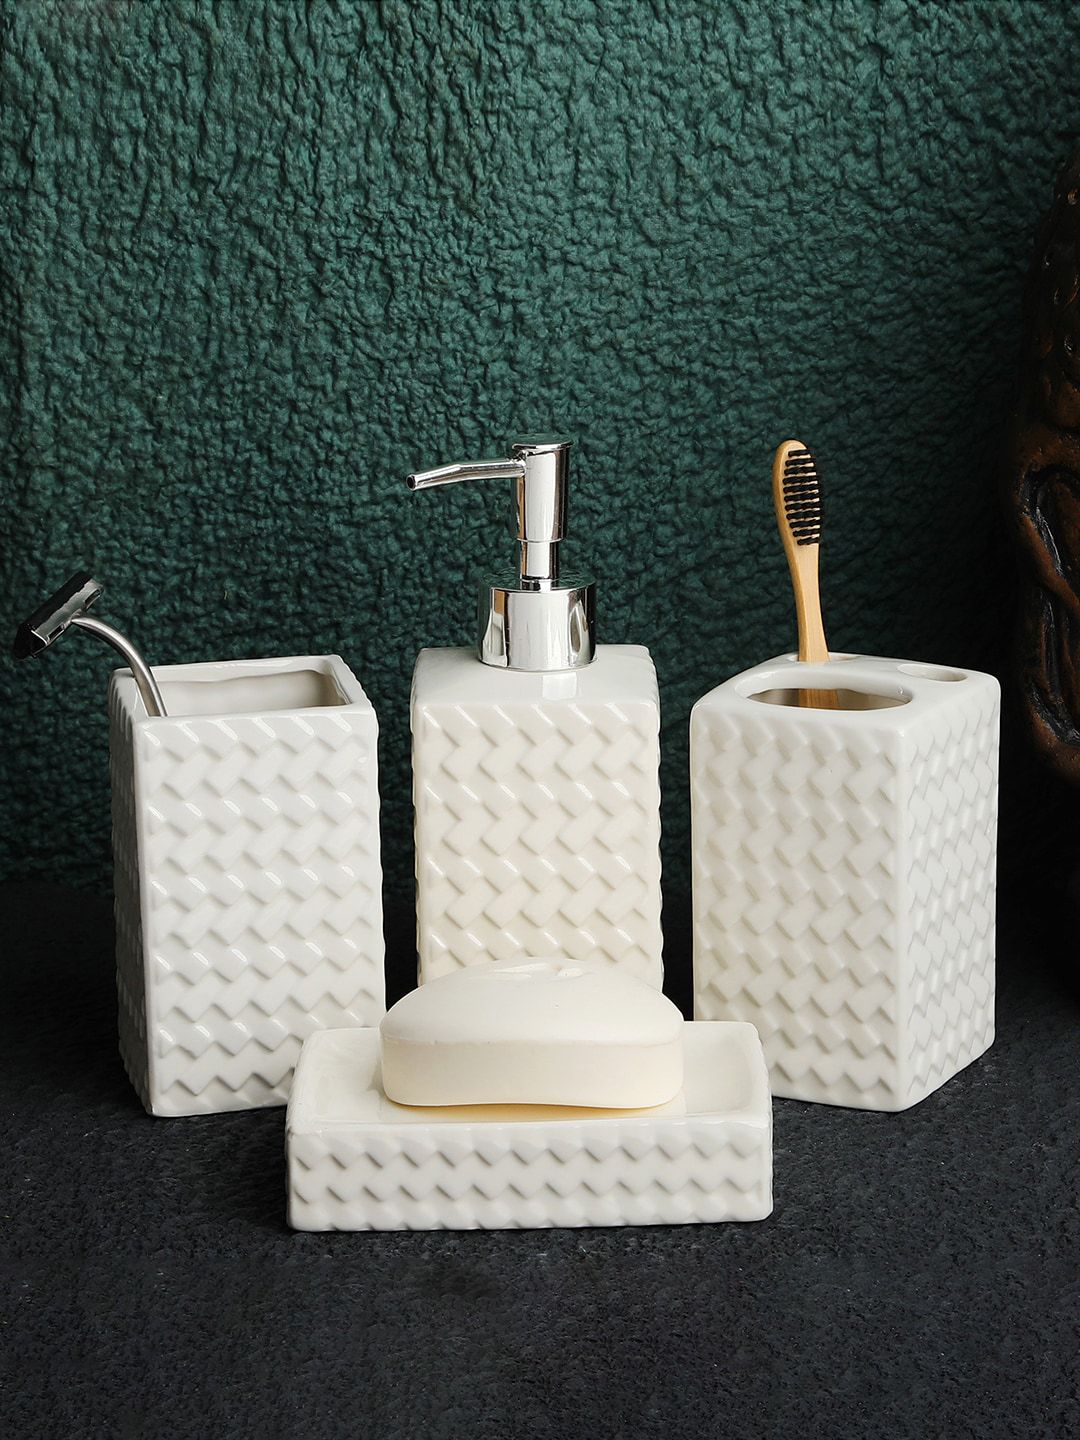 ROMEE White Ceramic Bathroom Accessories Set Price in India